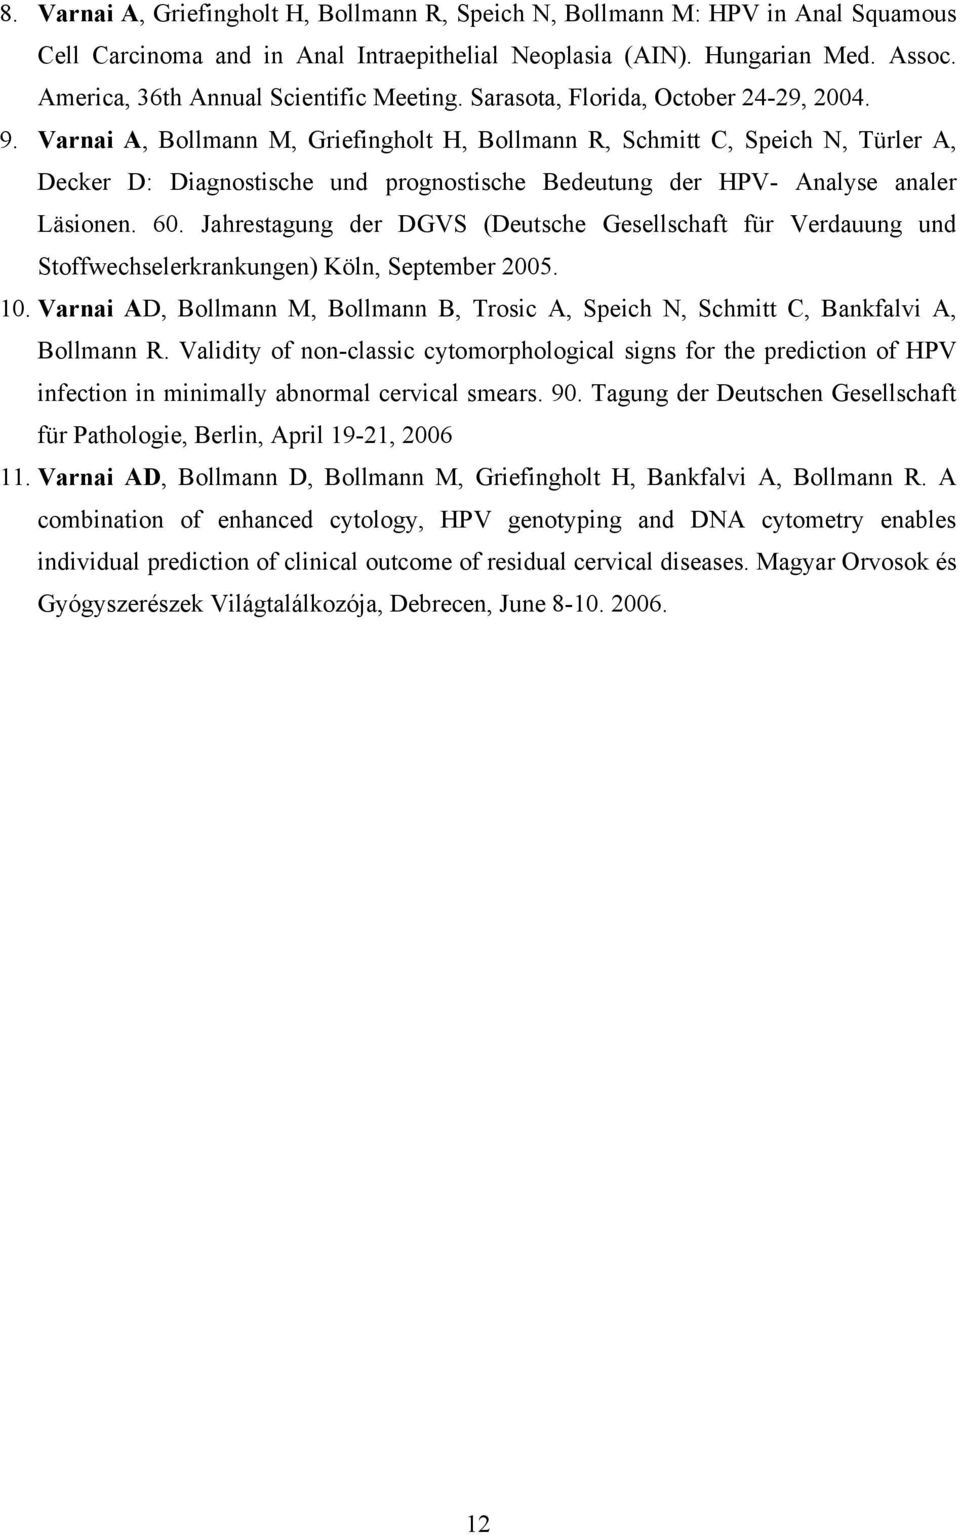 Varnai A, Bollmann M, Griefingholt H, Bollmann R, Schmitt C, Speich N, Türler A, Decker D: Diagnostische und prognostische Bedeutung der HPV- Analyse analer Läsionen. 60.